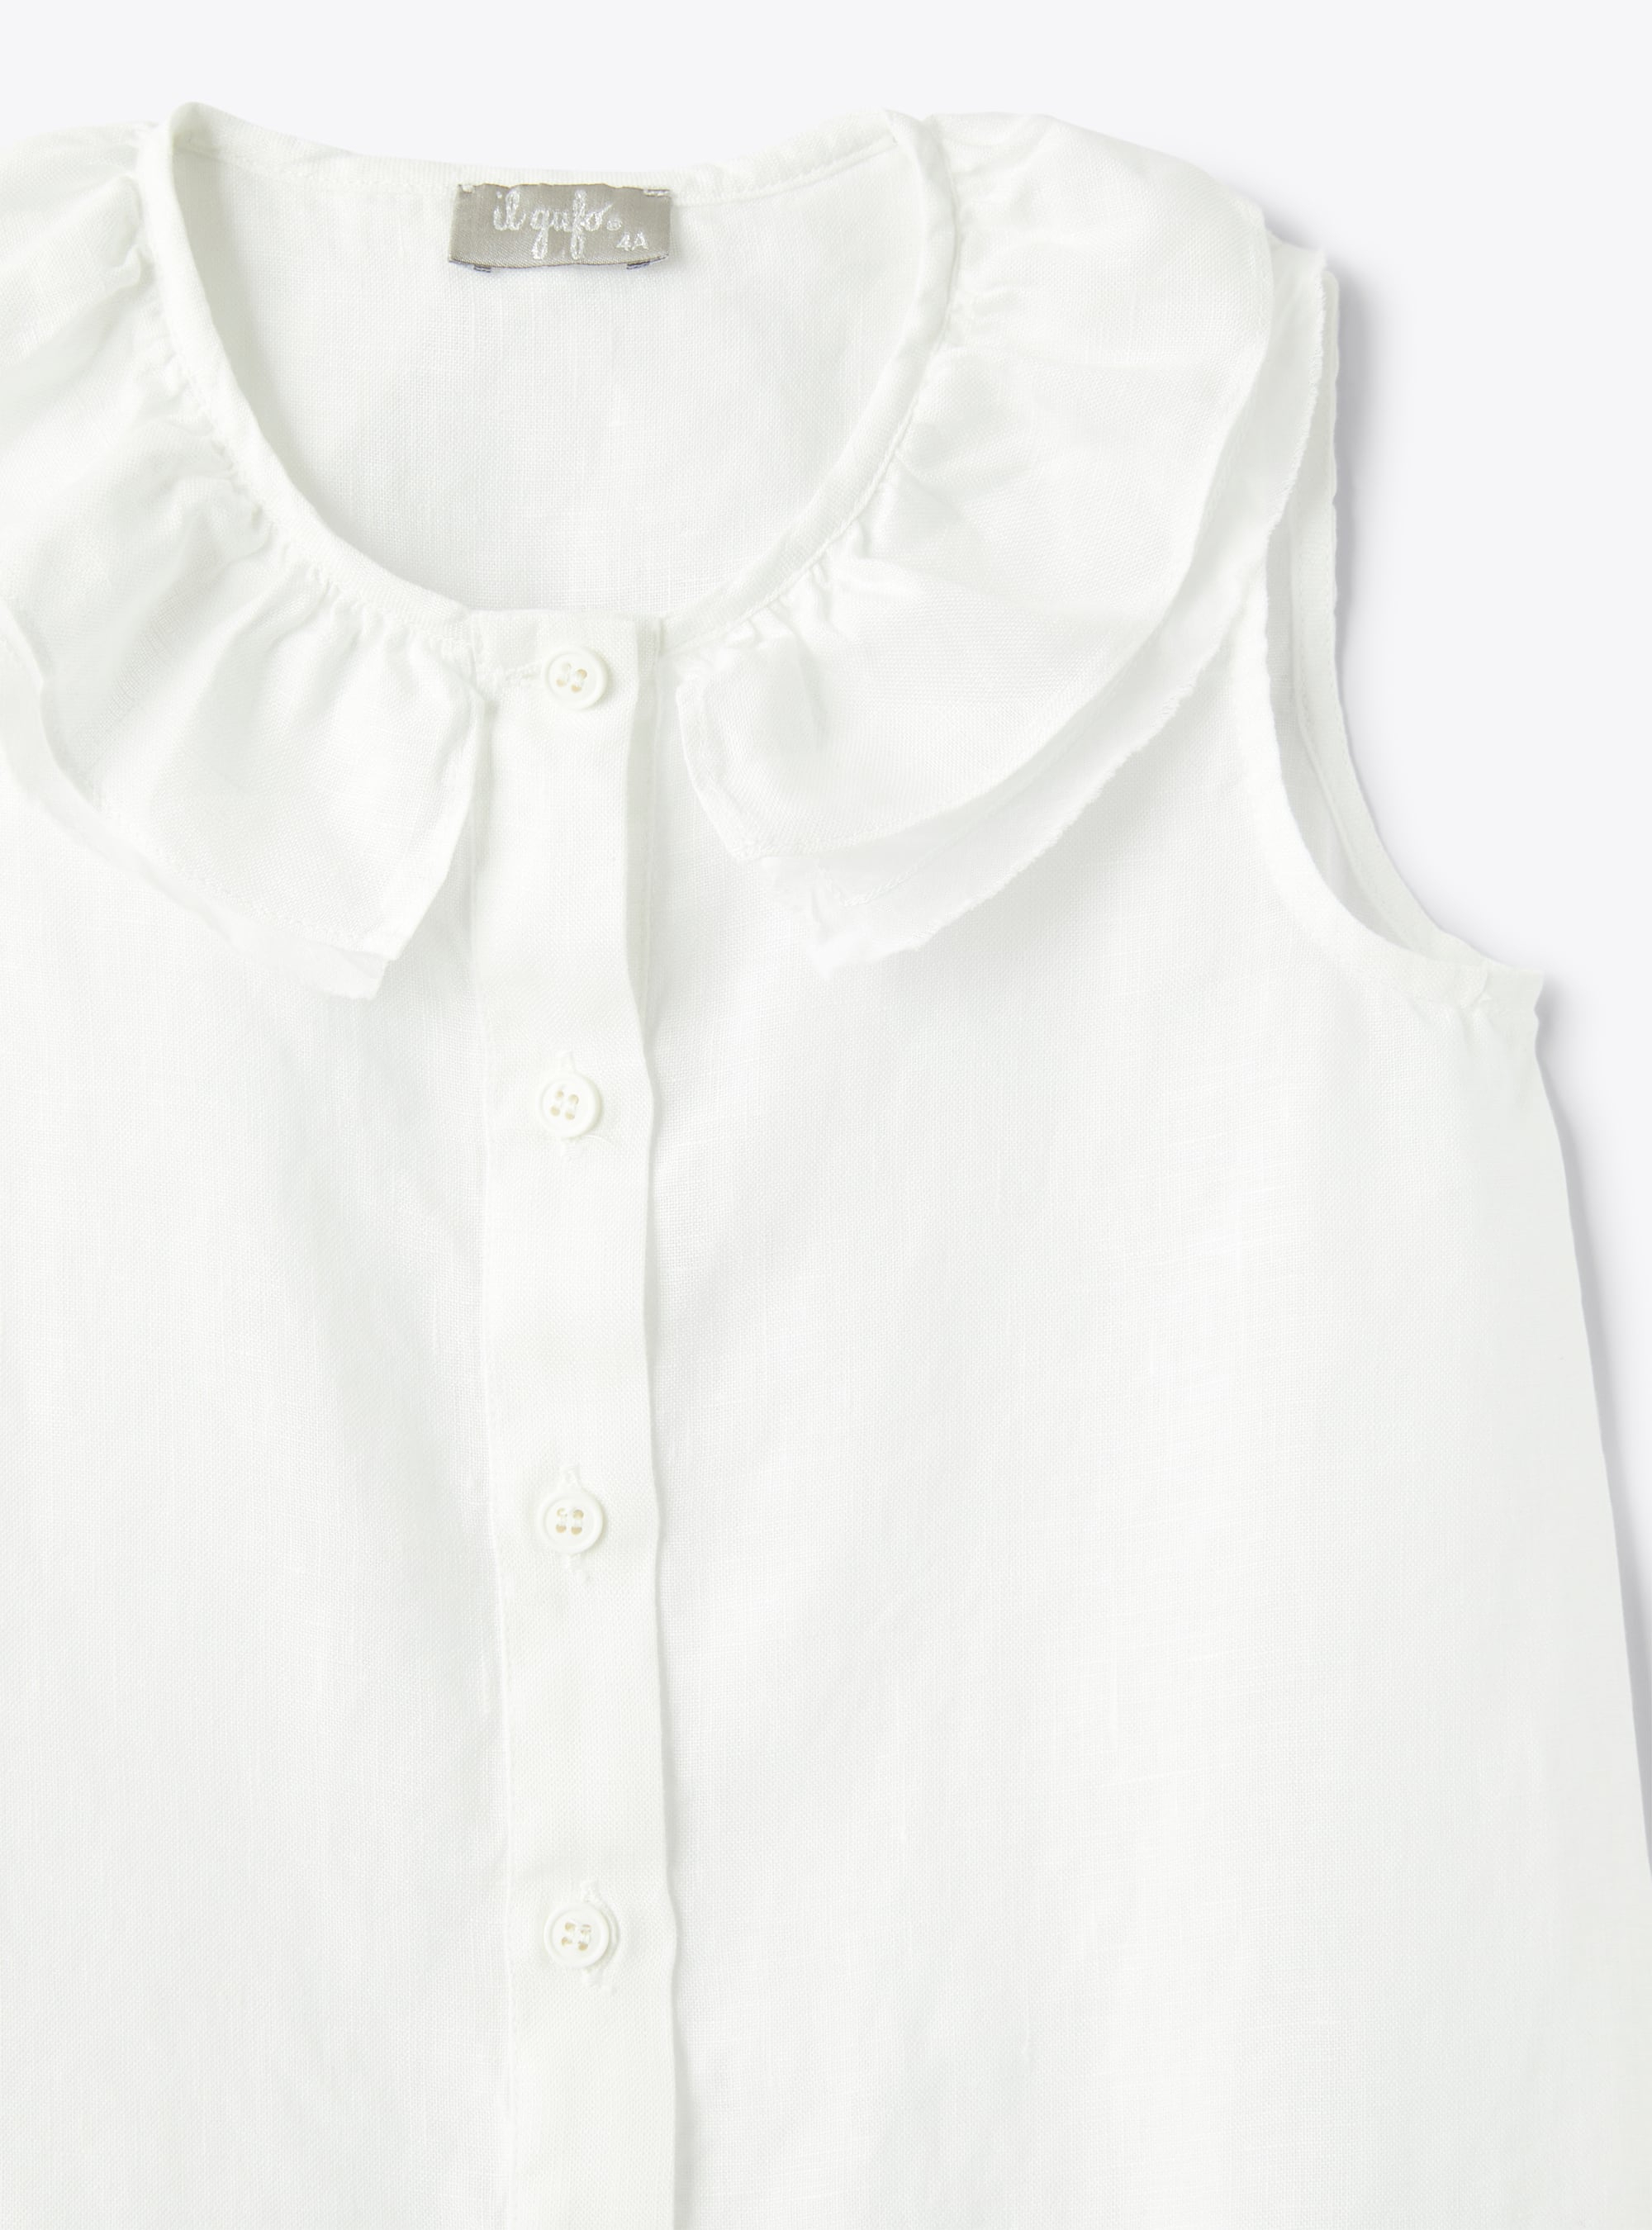 Kleid aus weißem Leinen mit Volantkragen - Weiss | Il Gufo